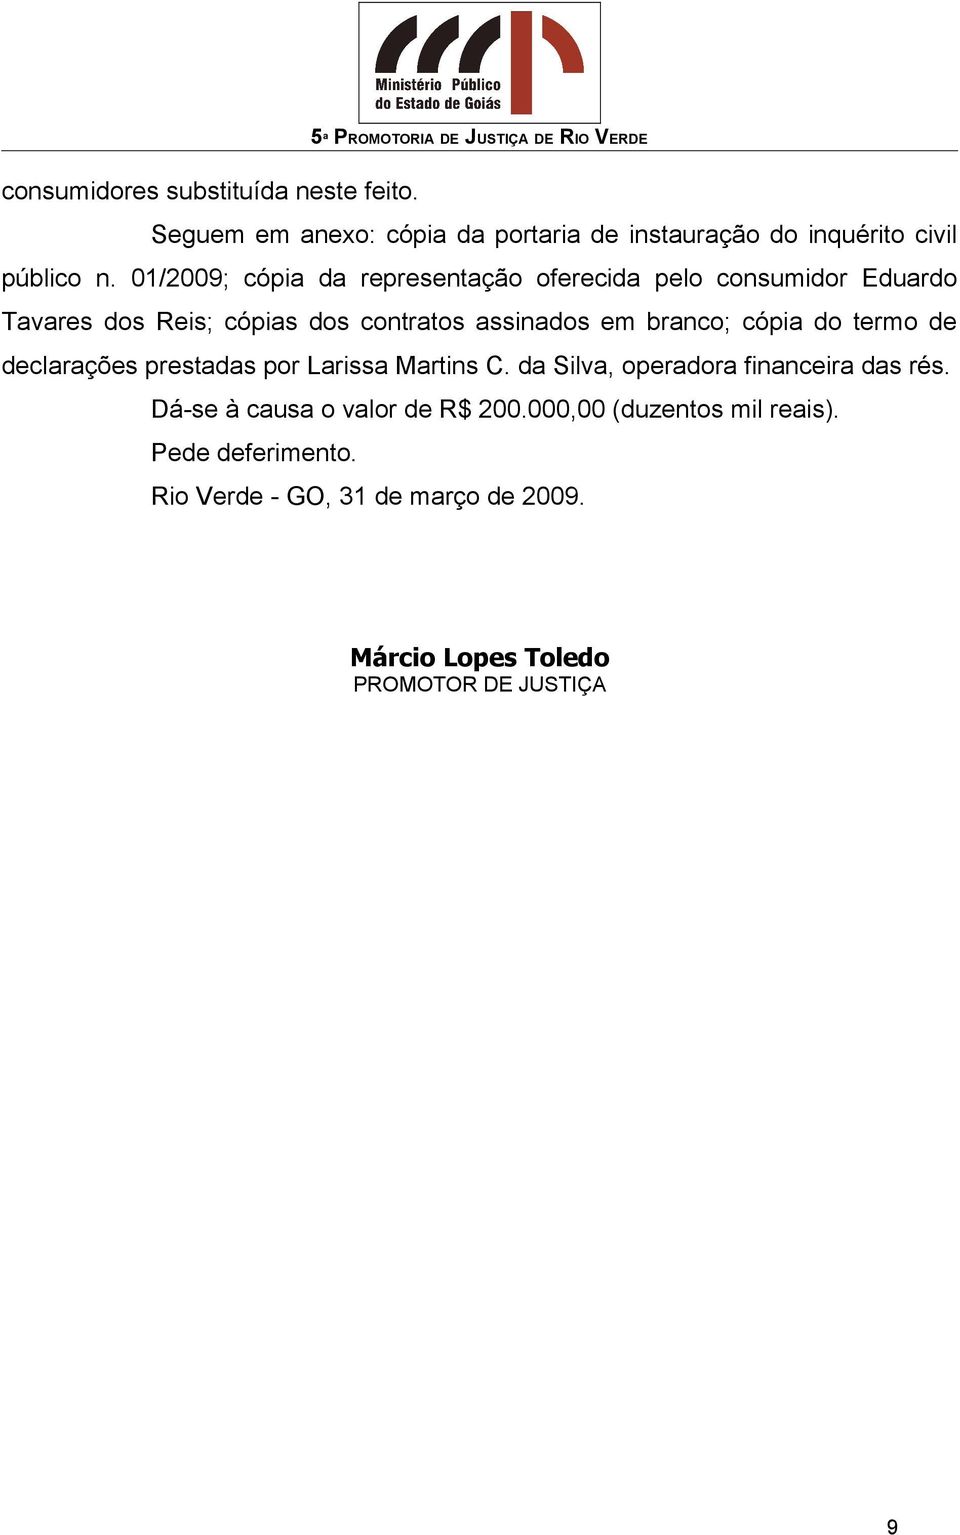 cópia do termo de declarações prestadas por Larissa Martins C. da Silva, operadora financeira das rés.